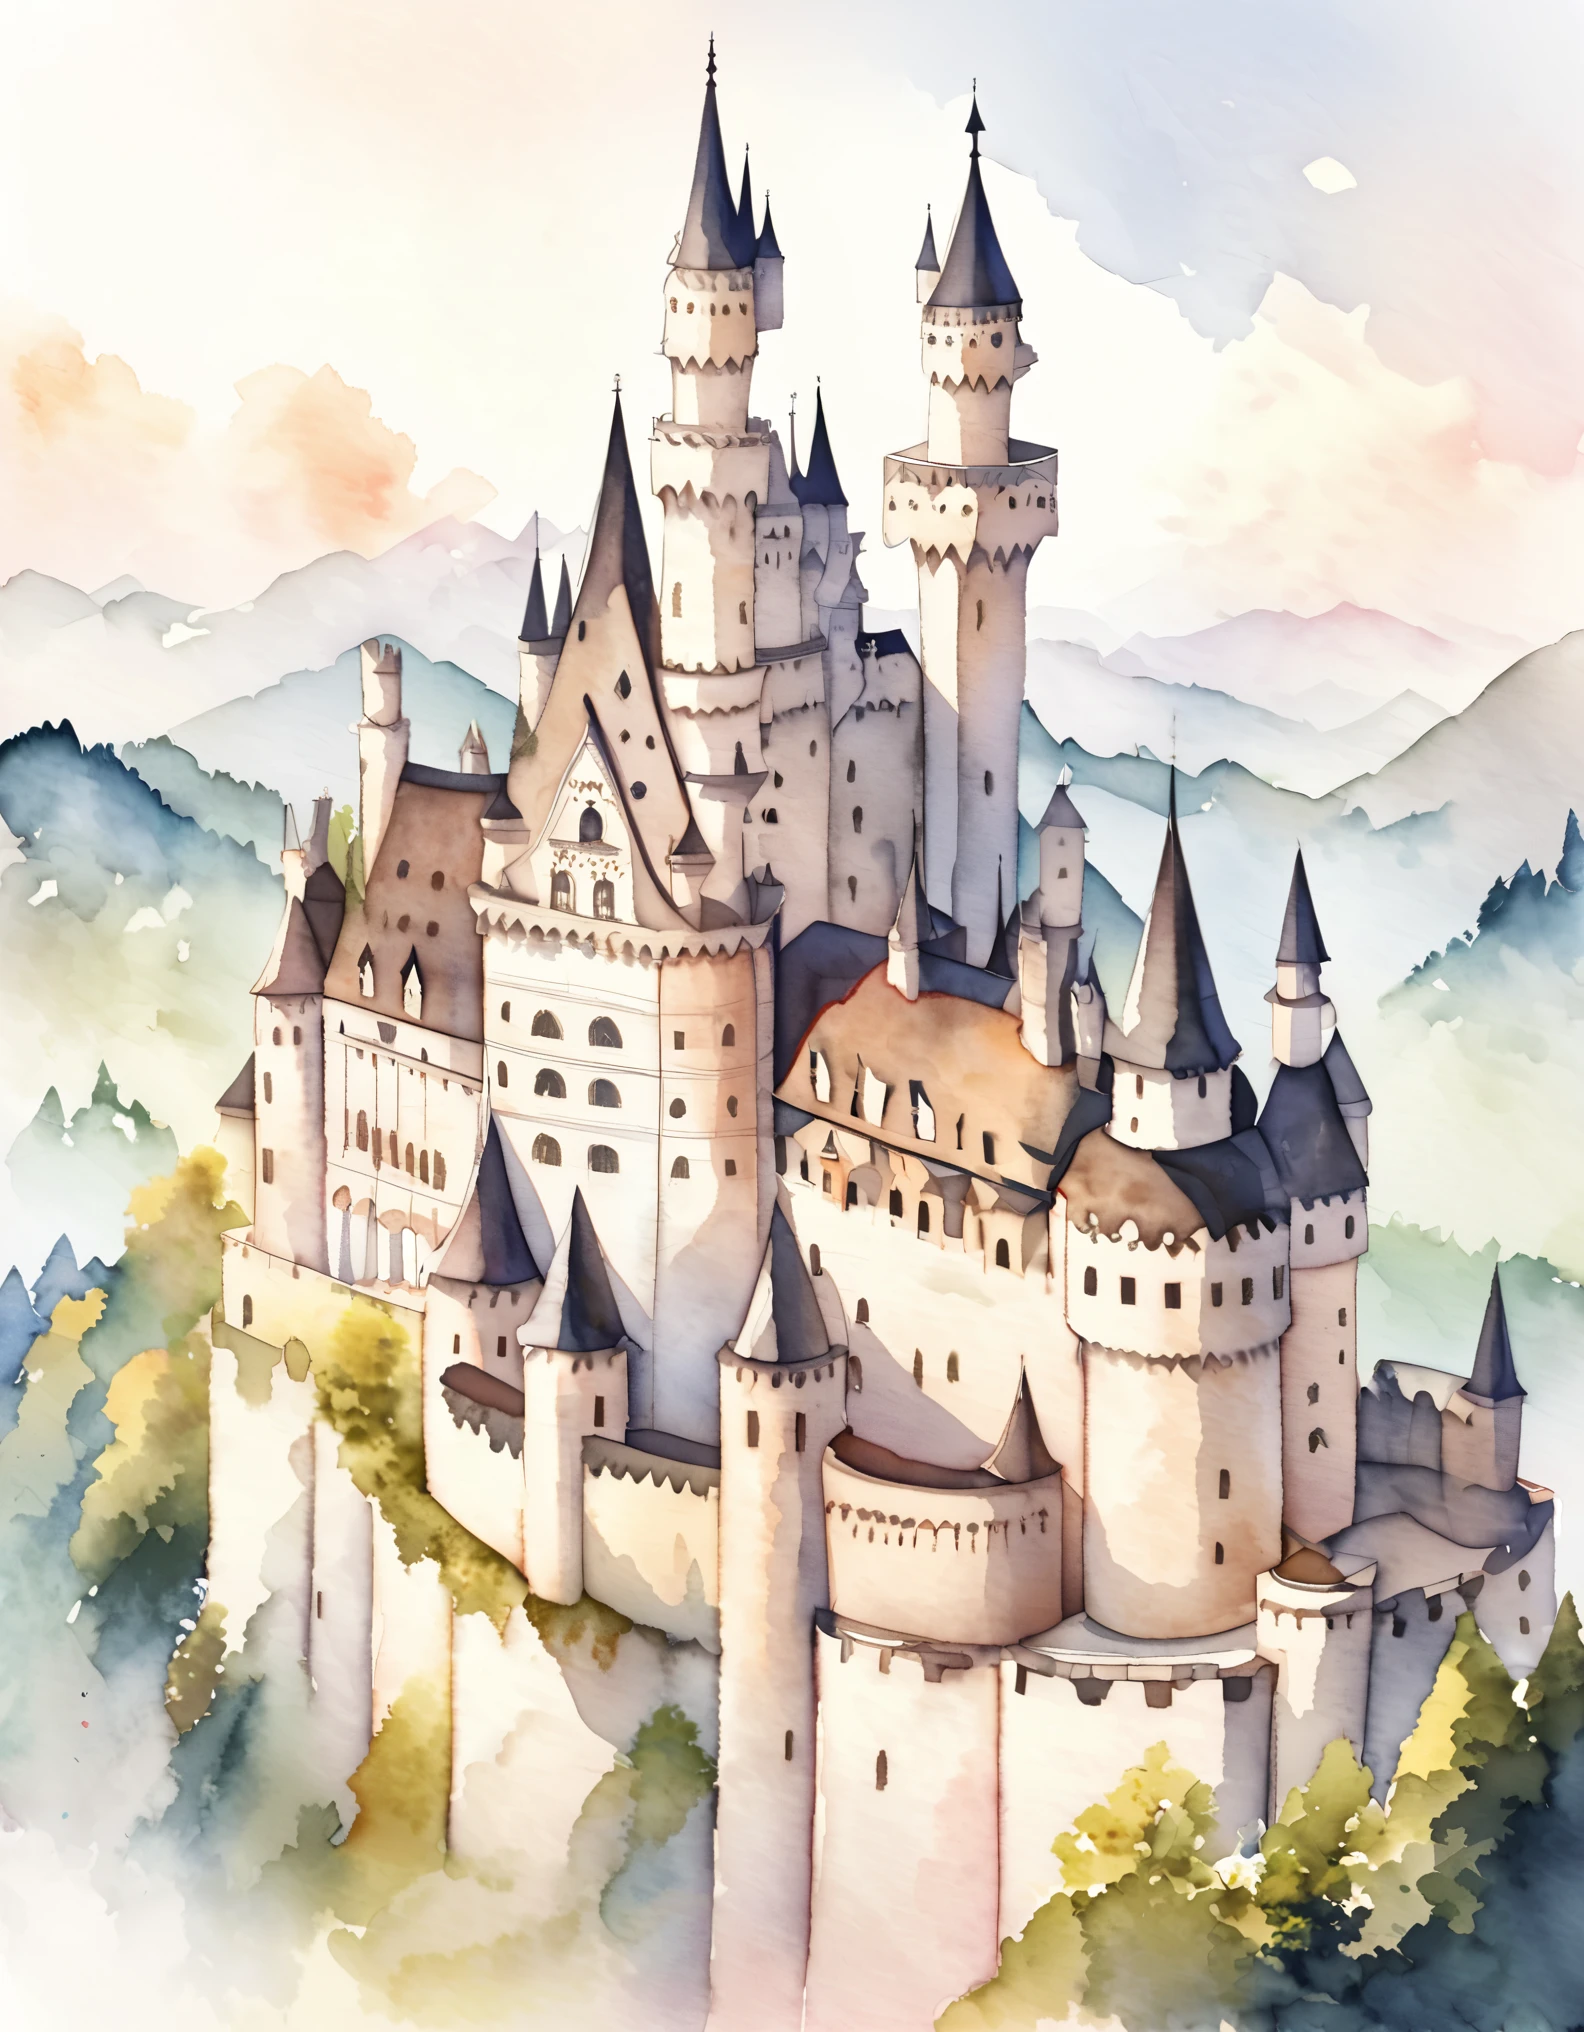 قلعة نويشفانشتاين, الجدران الخارجية مصنوعة من الطوب المغطى بالحجر الجيري الأبيض., قلعة رومانسية لملك يسعى وراء حلم لم يتحقق, قلعة جميلة, القلاع في ألمانيا, بنيت على تلة, ألوان مائية:1.2, غريب الاطوار وحساسة, مثل الرسم التوضيحي في الأطفال&#39;كتاب, فرشاة لطيفة, خافت, الألوان الفاتحة تخلق مظهرًا خياليًا.